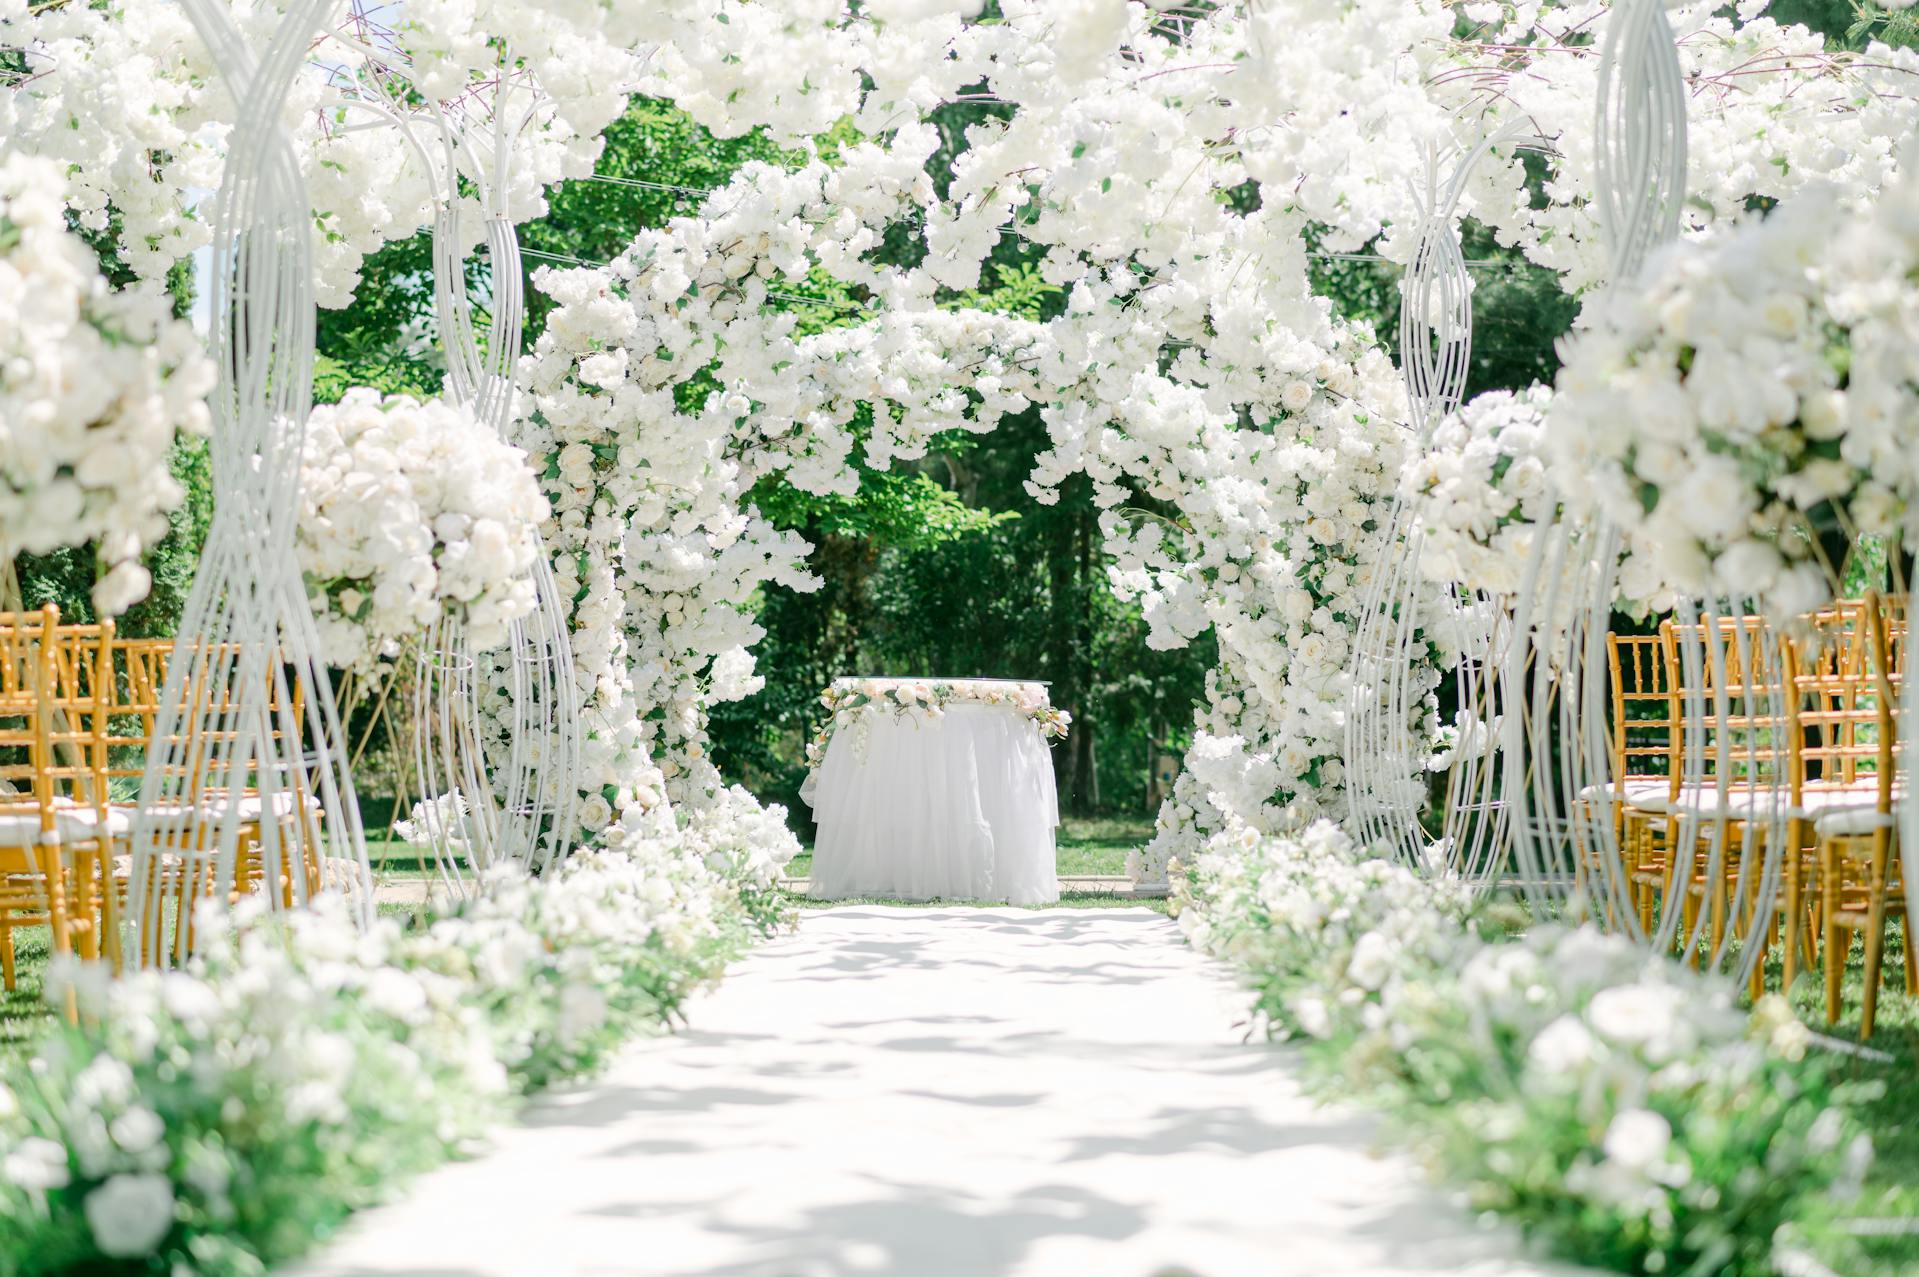 Ein Hochzeitsaufbau in einem Garten | Quelle: Pexels